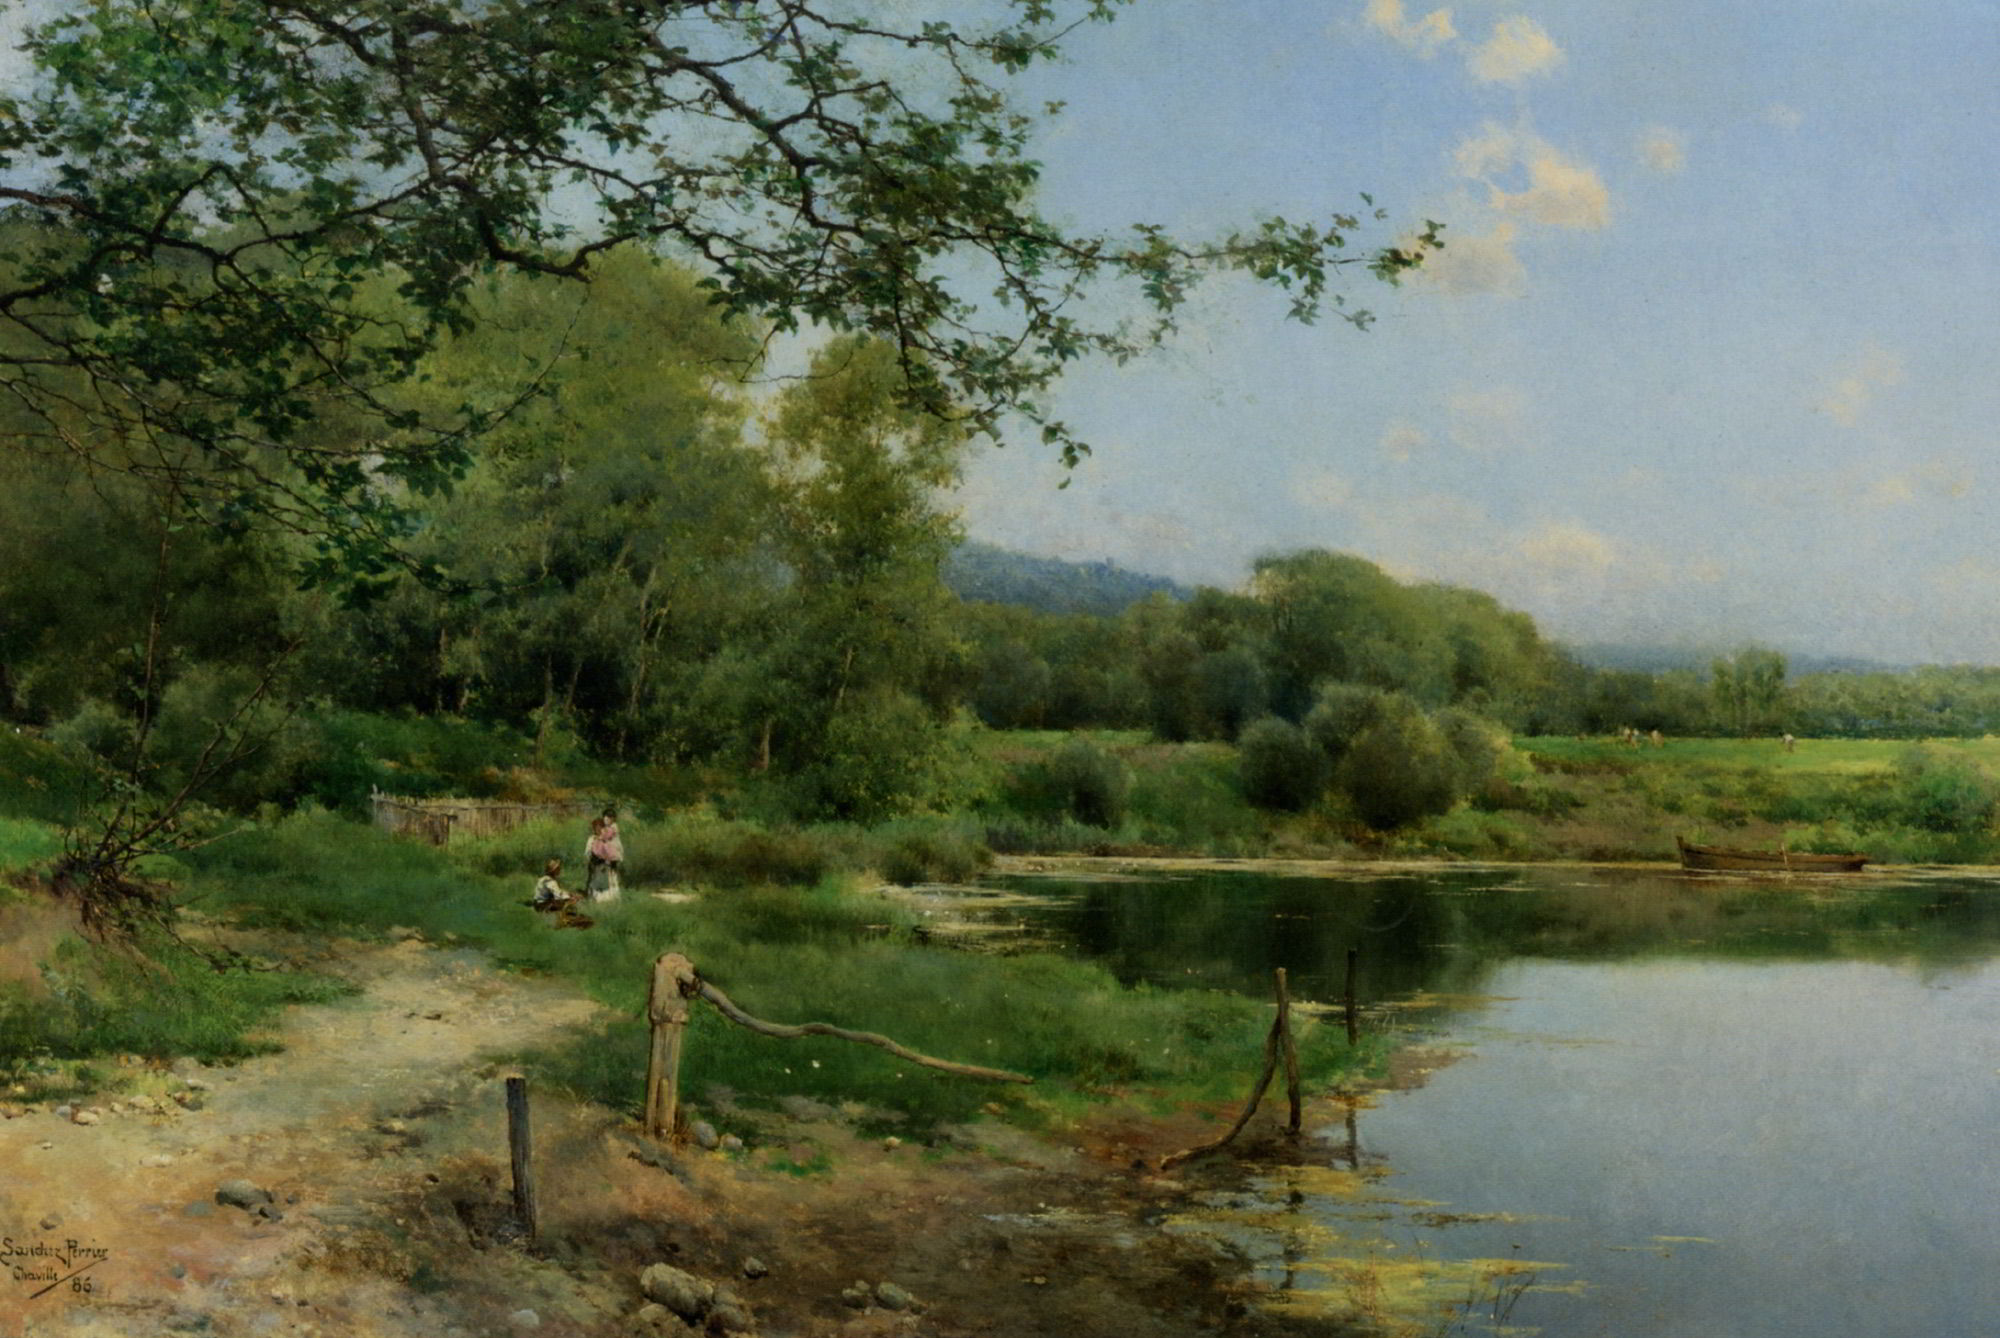 A Picnic on the Riverbank by Emilio Sanchez-Perrier (Emilio Sanchez Perrier)